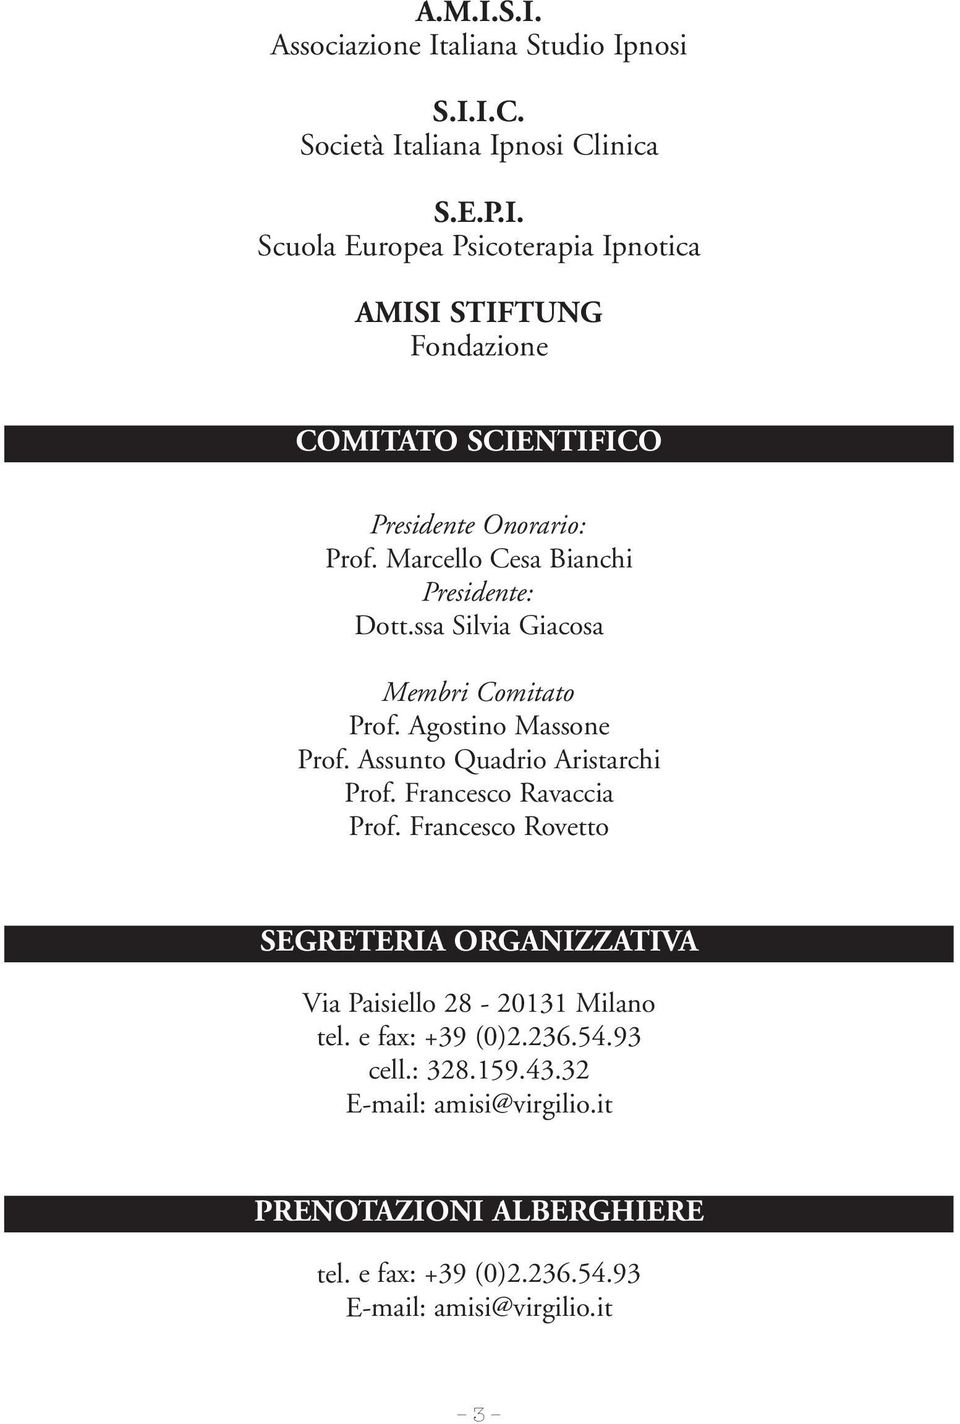 Francesco Ravaccia Prof. Francesco Rovetto SEGRETERIA ORGANIZZATIVA Via Paisiello 28-20131 Milano tel. e fax: +39 (0)2.236.54.93 cell.: 328.159.43.